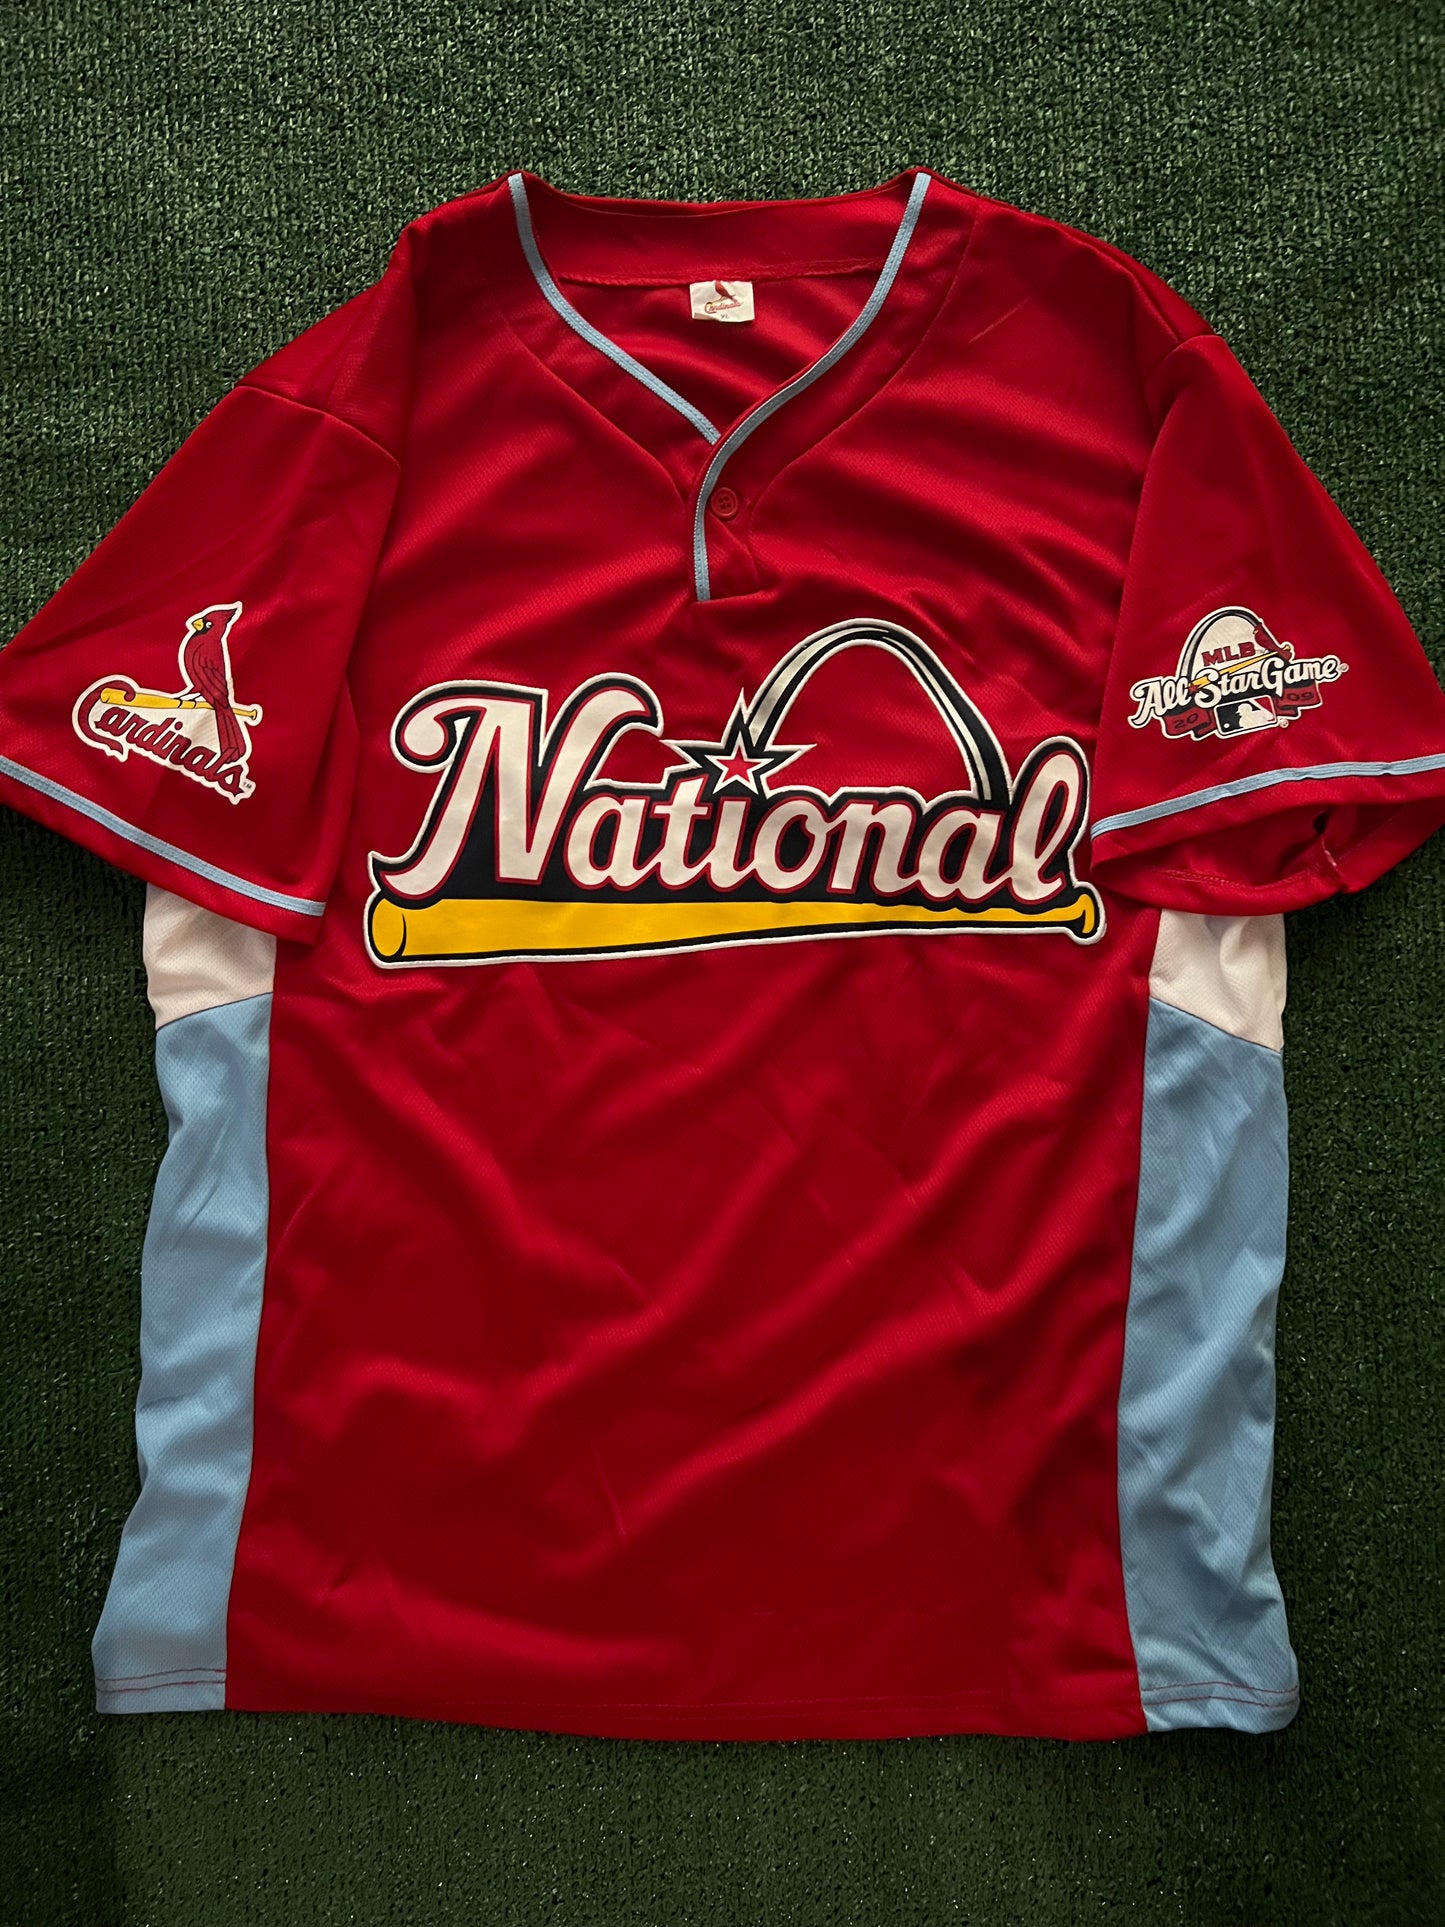 Red 2009 Nationals/Cardinals Jersey (XL)